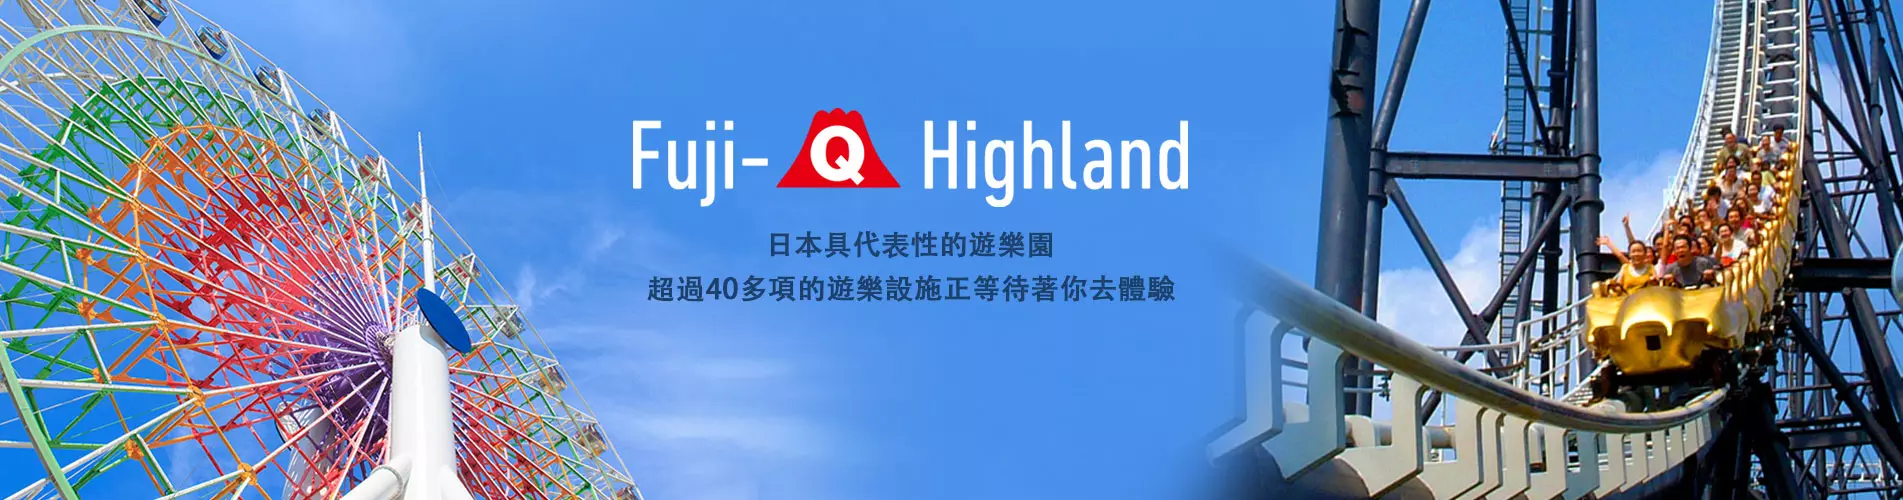 日本東京富士急樂園門票 Fuji Q Highland Tokyo